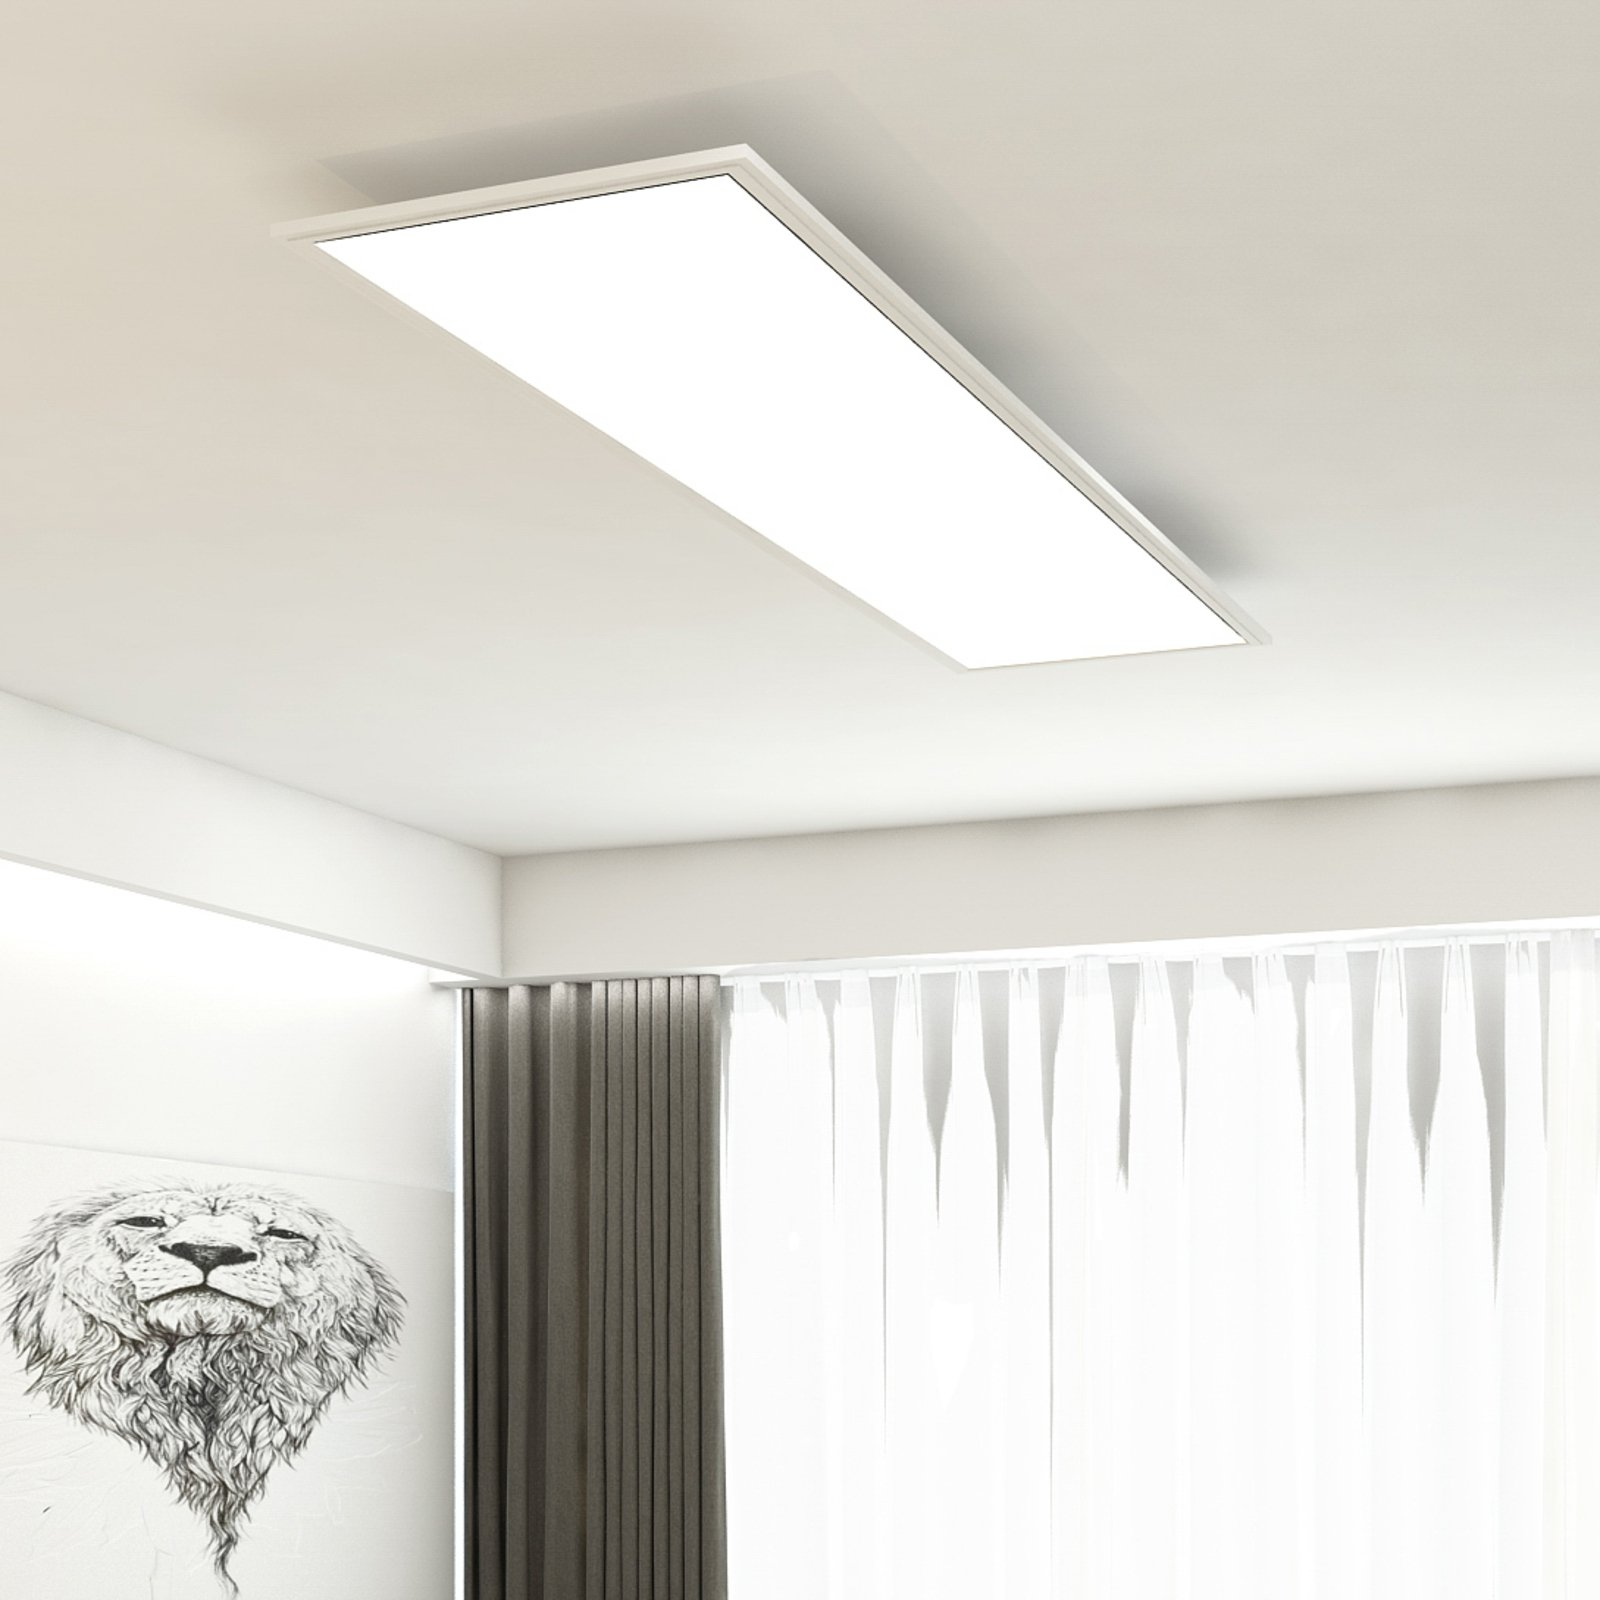 LED-paneel Simple, valge, üliplaatne, 119,5x29,5cm